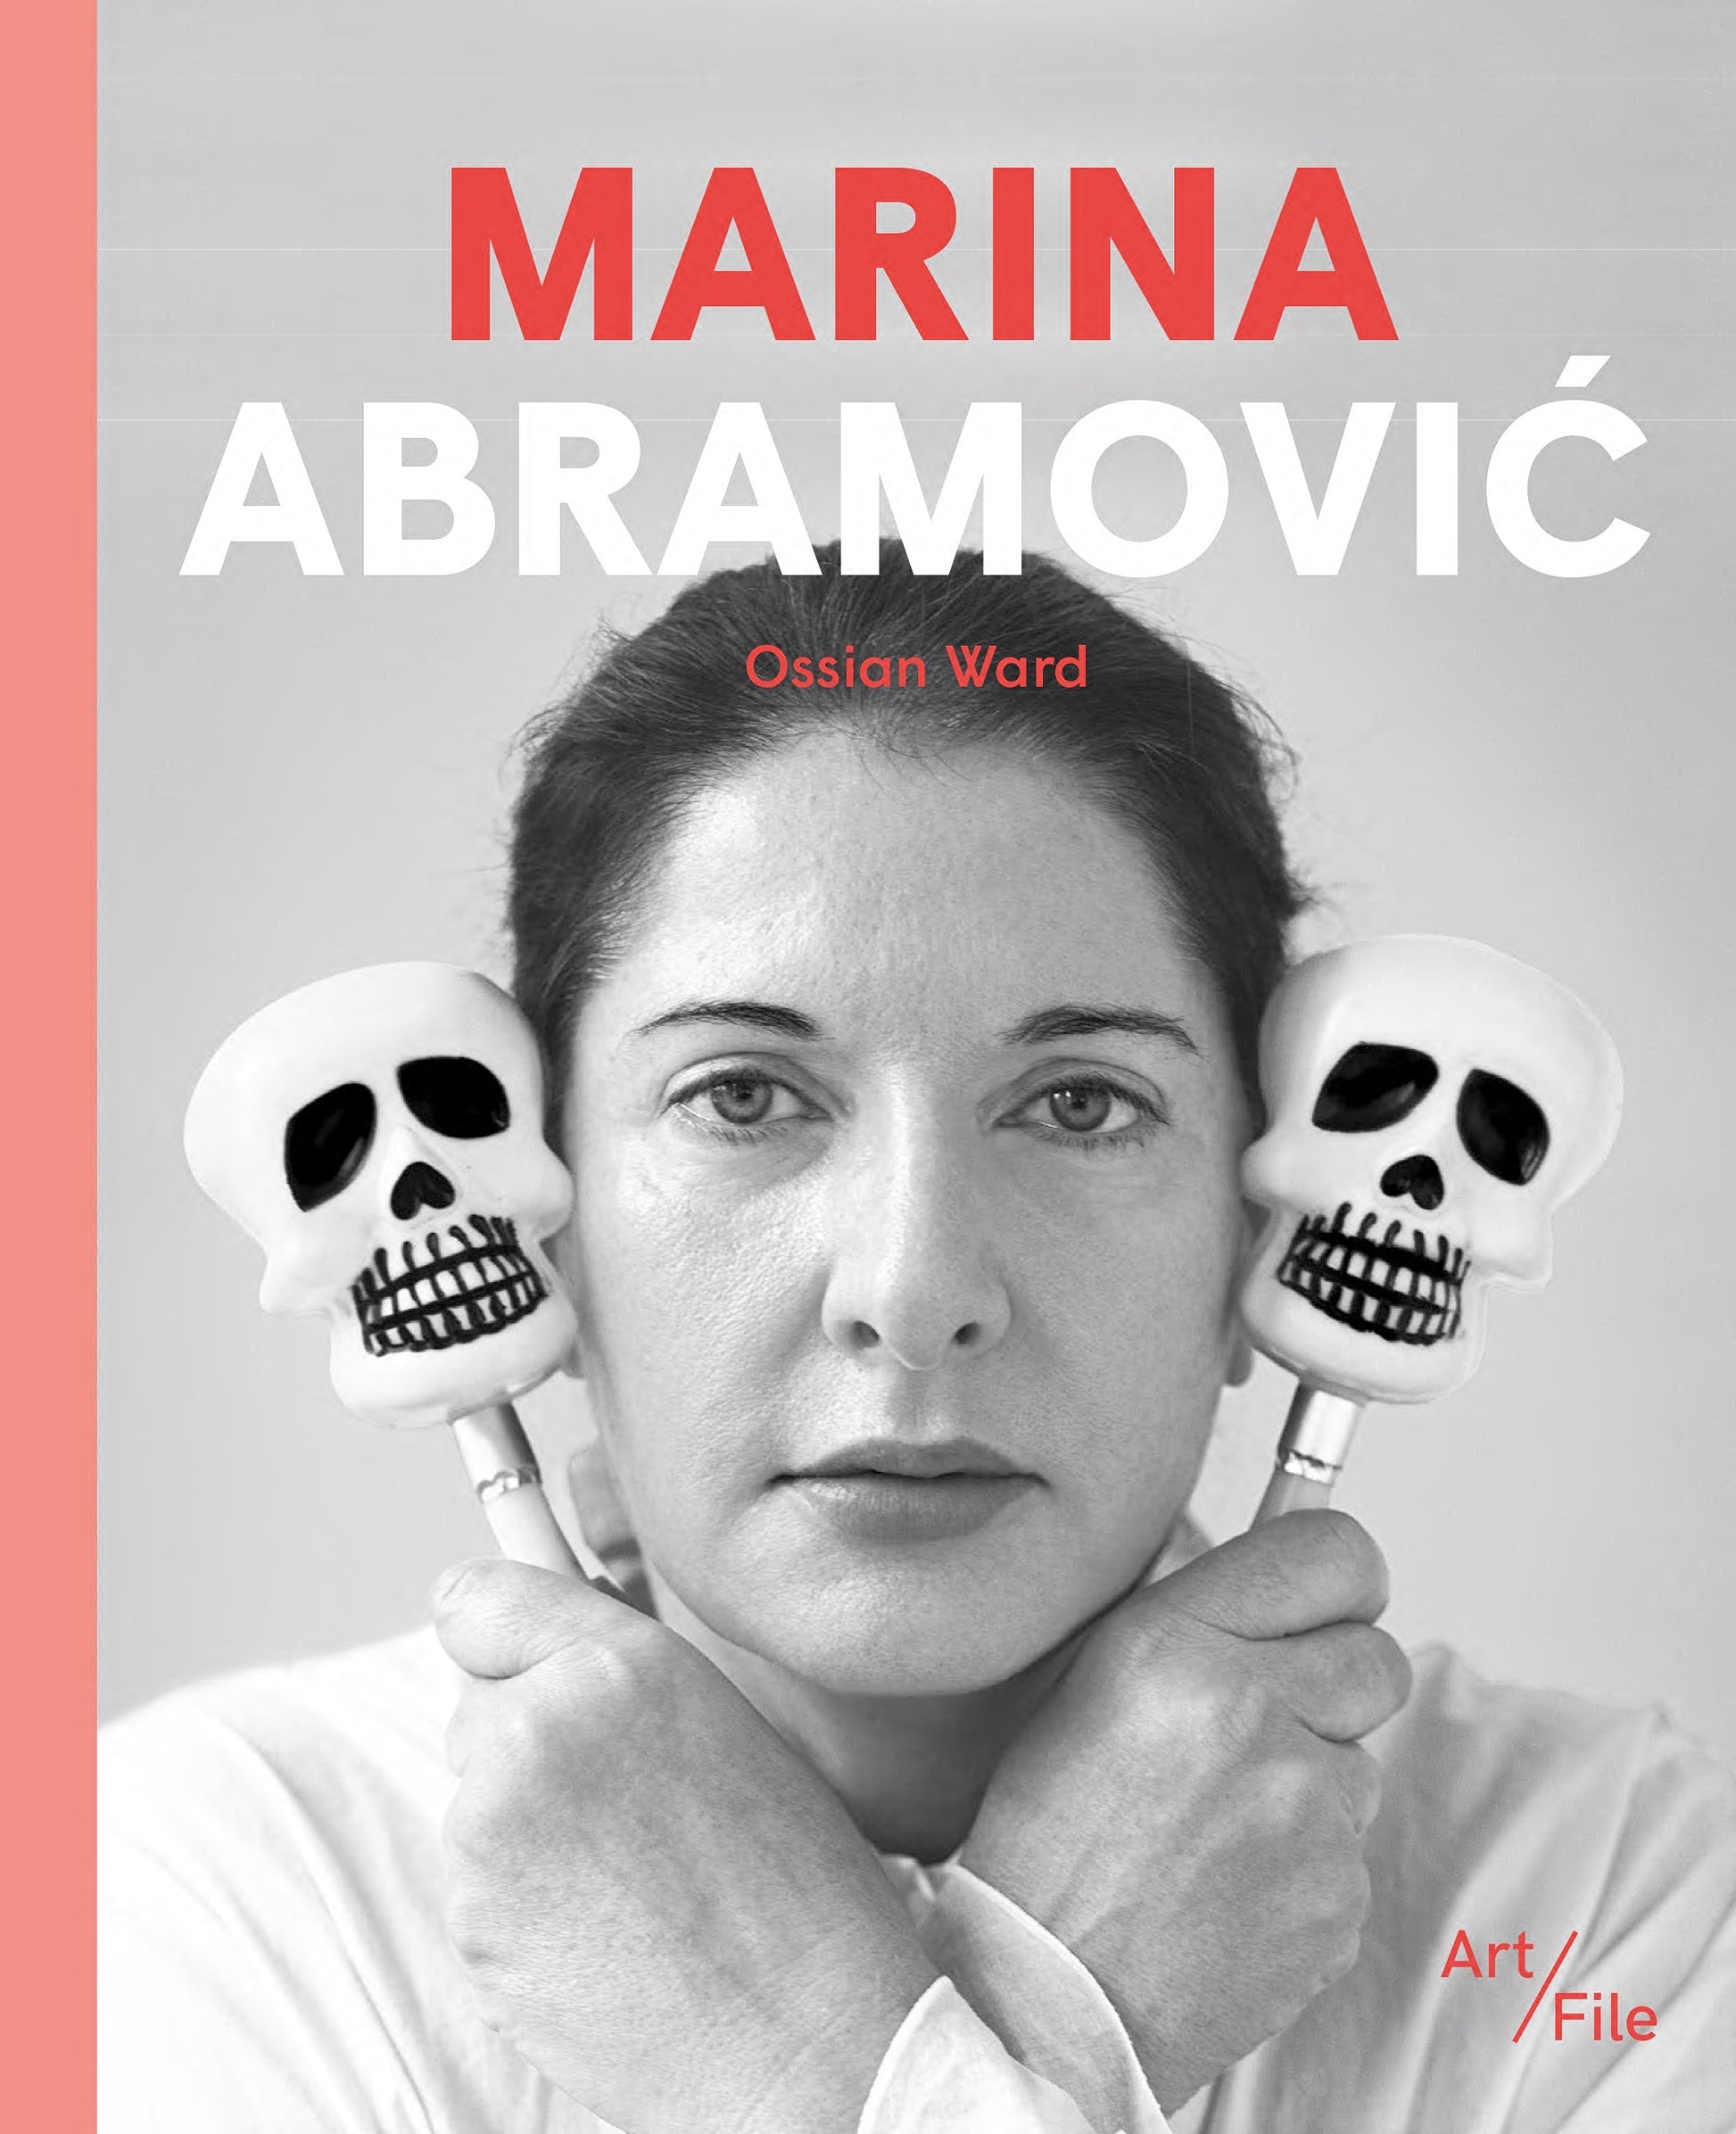 Marina Abramovic by Ossian Ward